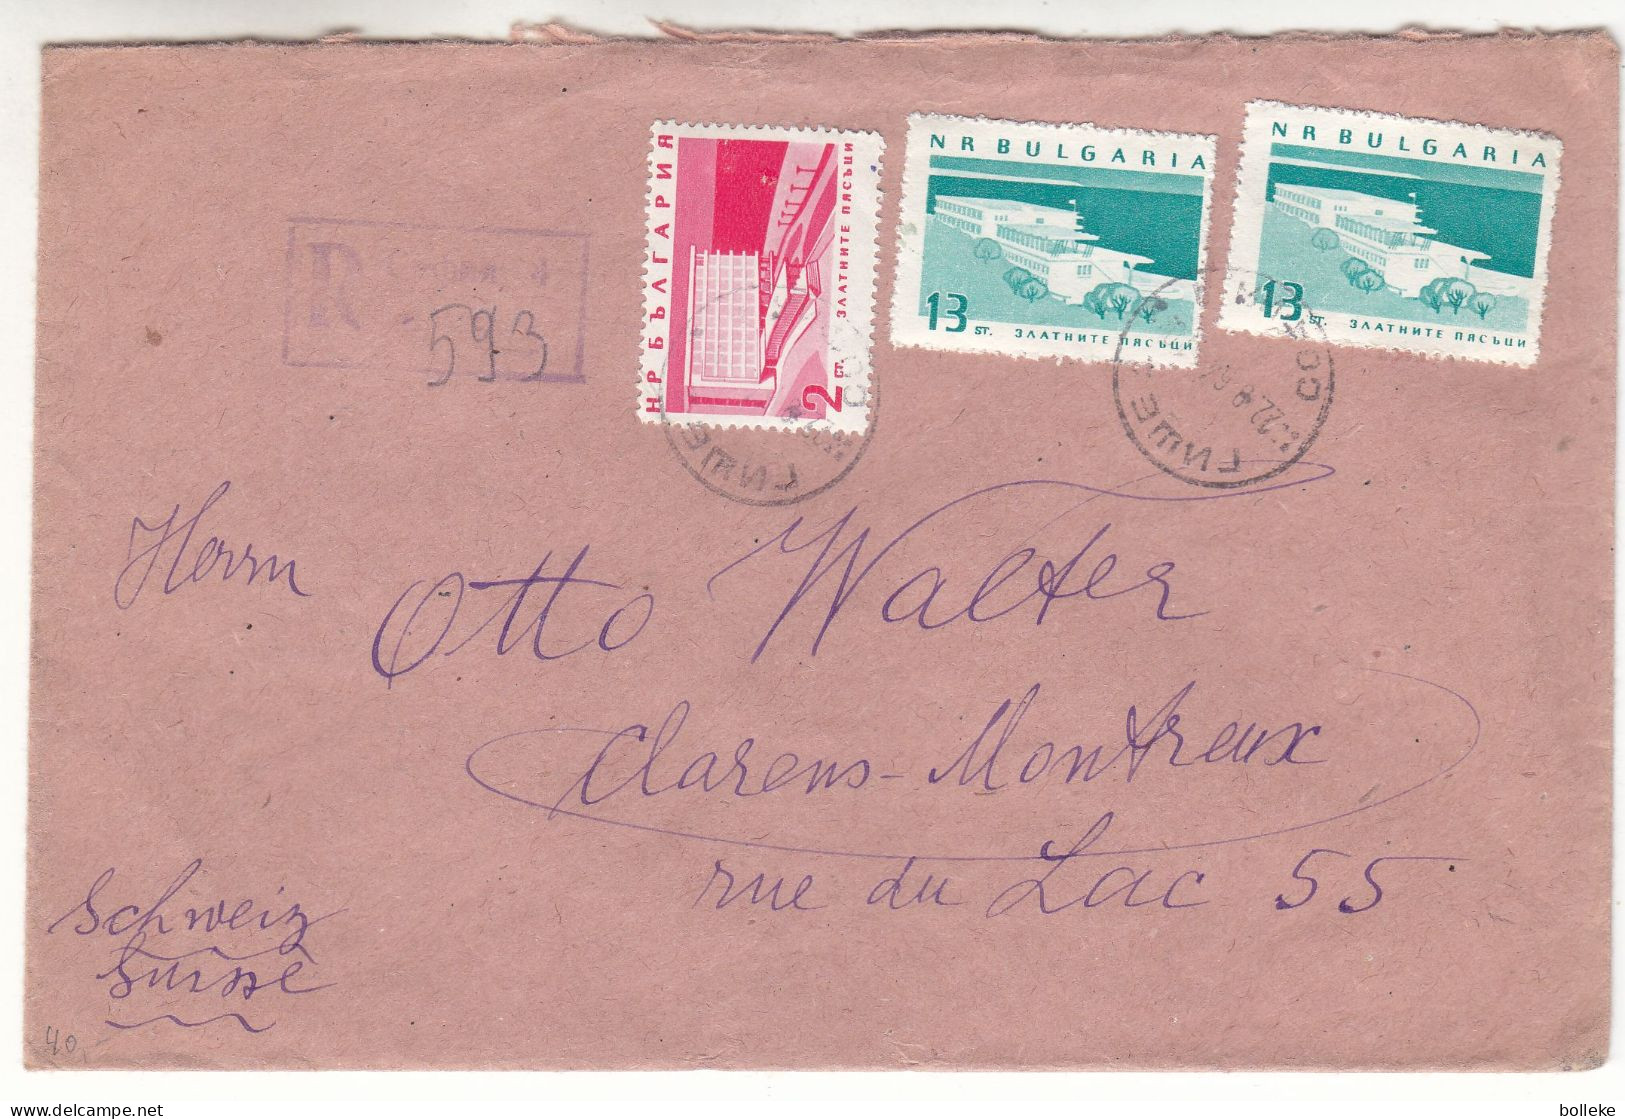 Bulgarie - Lettre Recom De 1964 - Oblit Sofia - Exp Vers Clarens Montreux - - Storia Postale